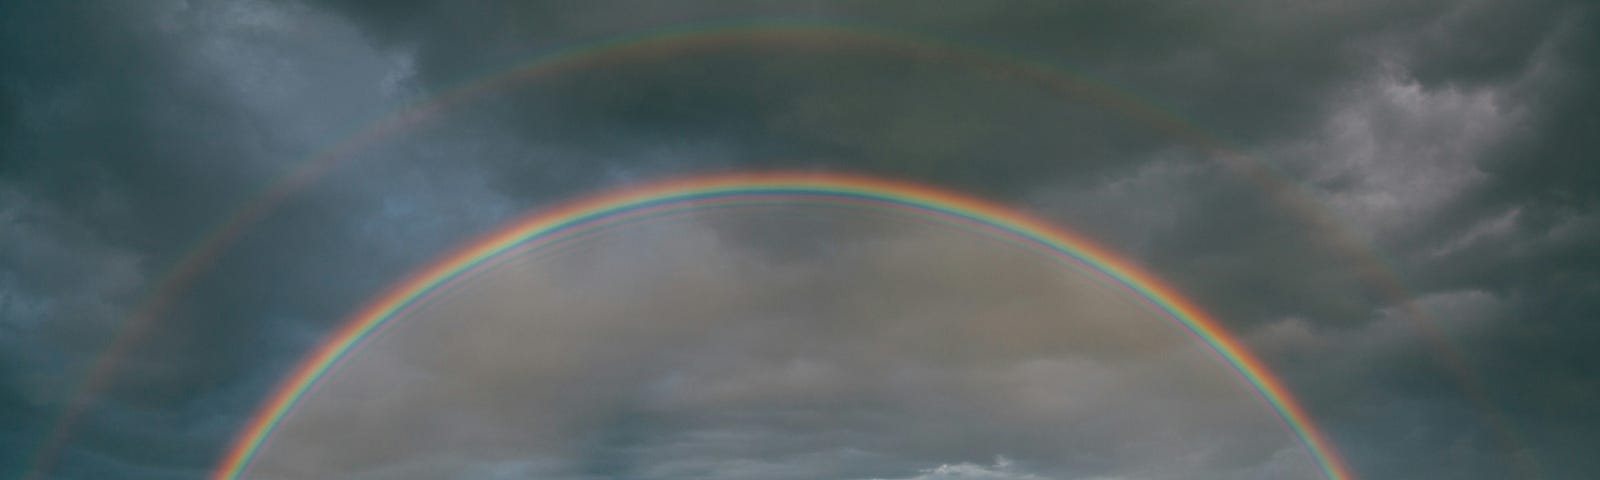 photo of double rainbow